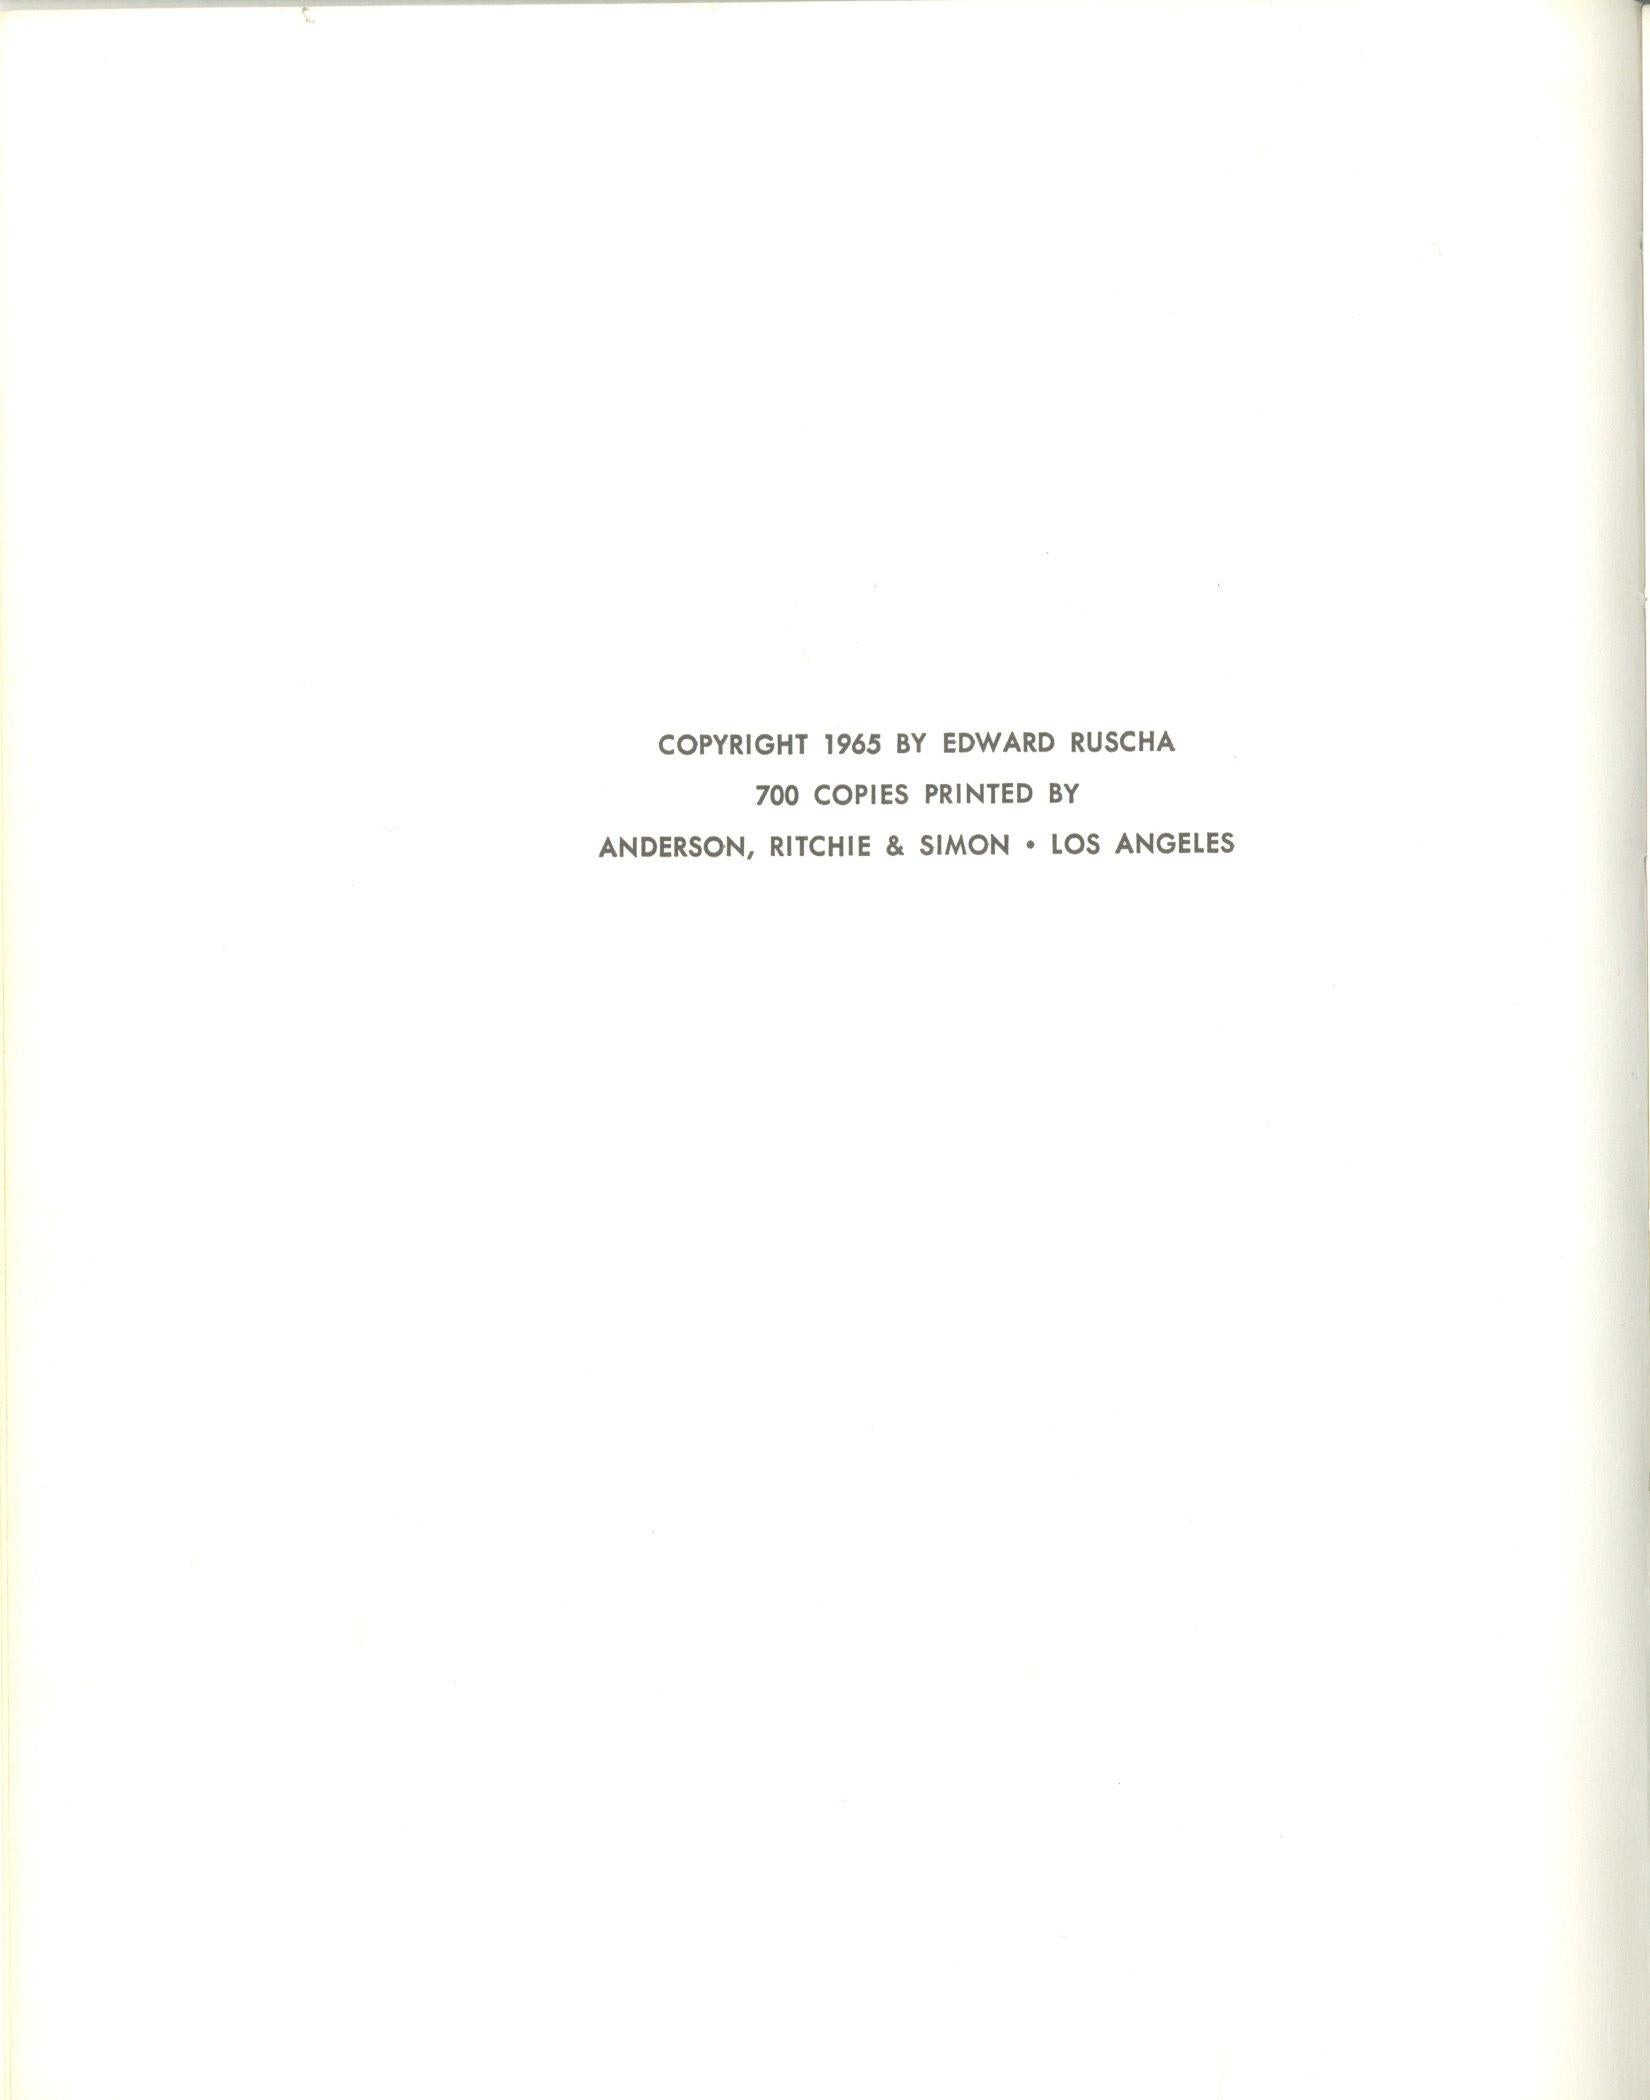 Ed Ruscha
Einige Wohnungen in Los Angeles (unsigniert), 1965
Trueing Erstausgabe Künstlerbuch: Limitierte Auflage von nur 700 Stück
7 × 5 1/2 Zoll
Ungerahmt
Ein seltenes und schwer erhältliches Künstlerbuch aus den 1960er Jahren. Ein großartiges